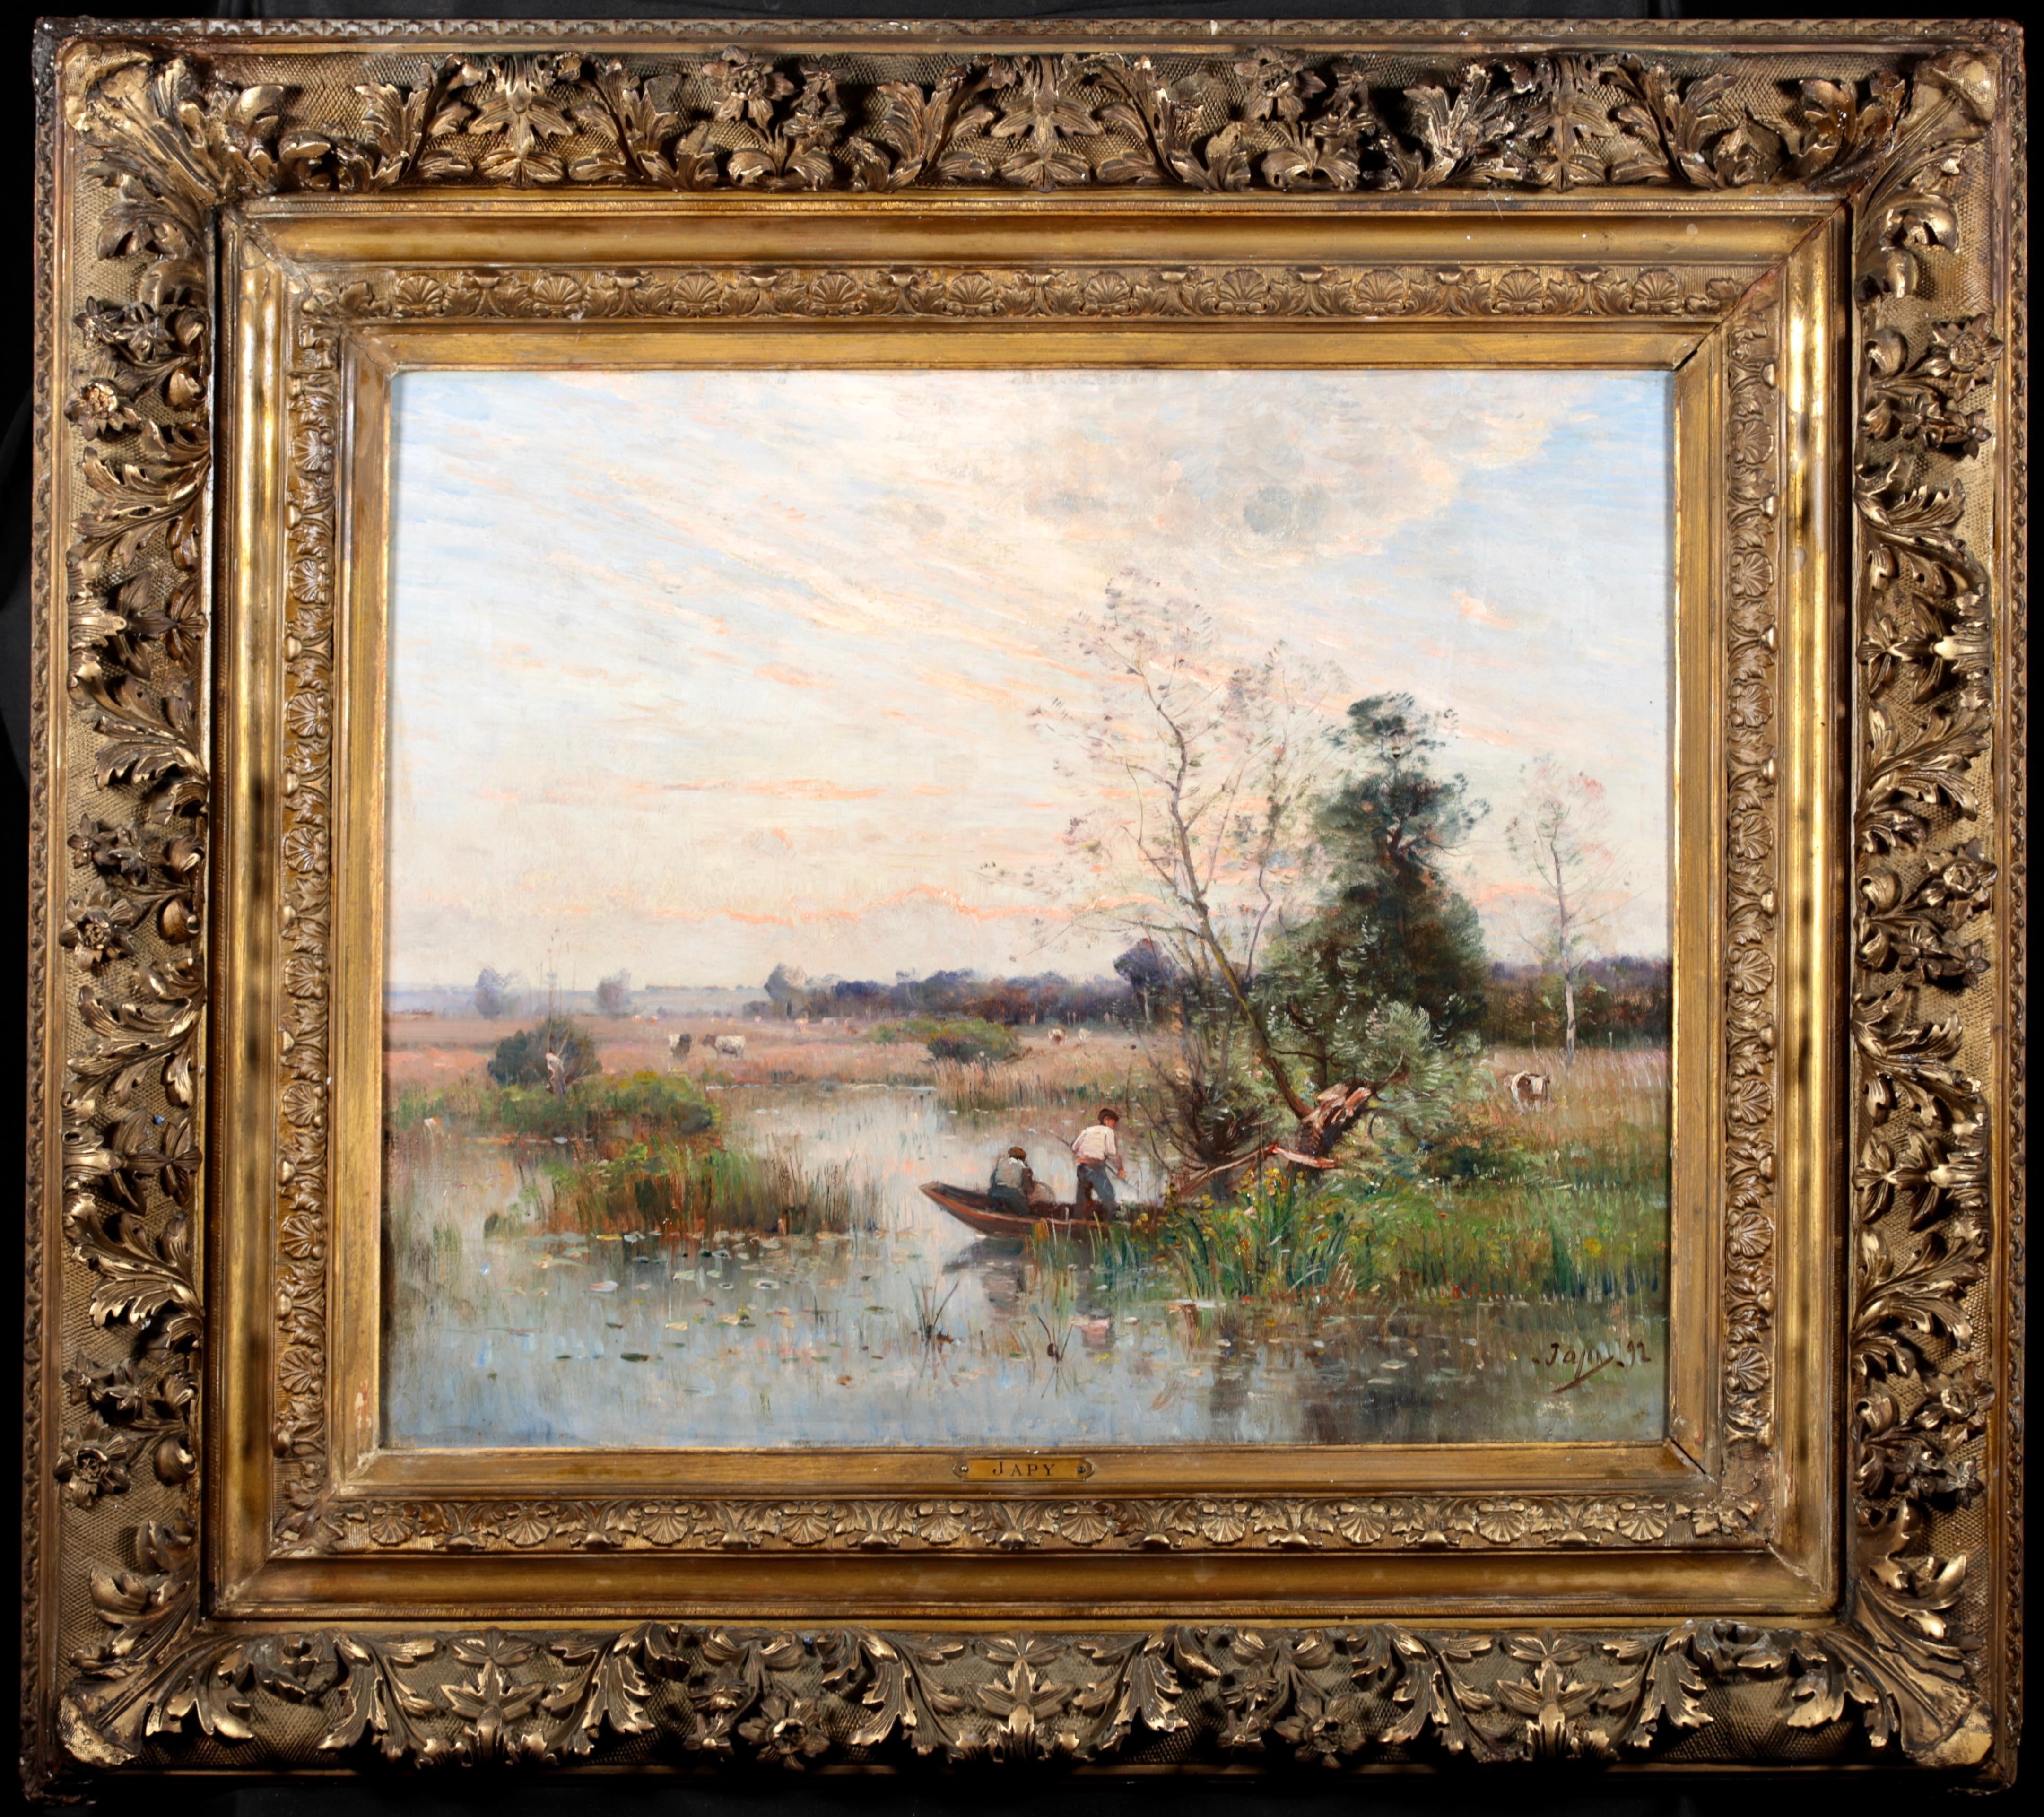 Fishing on a River - Impressionistisches Ölgemälde, Boot auf Fluss Landschaft von Louis Japy – Painting von Louis Aimé Japy